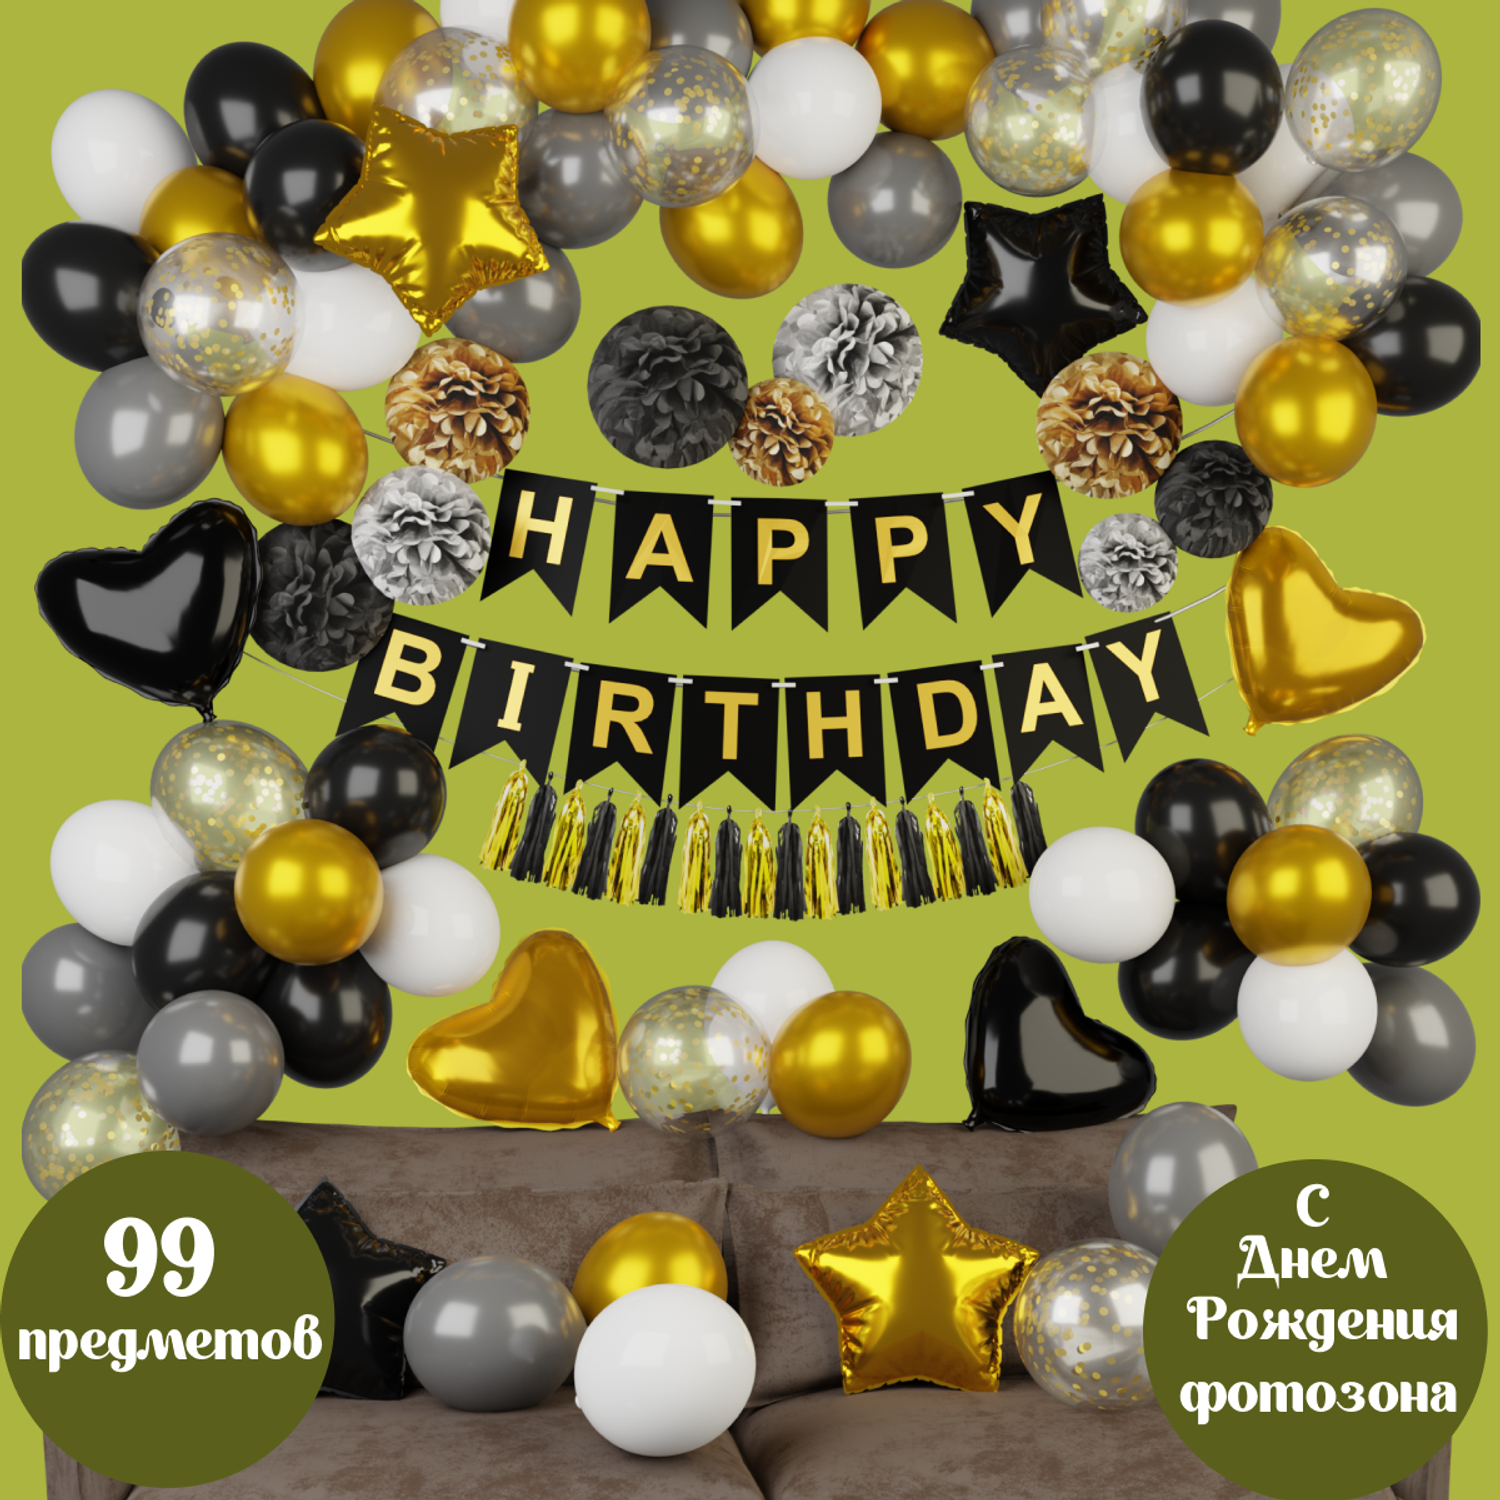 Воздушные шары набор Мишины шарики для фотозоны на день рождения с буквами Happy Birthday и бумажными помпонами - фото 1